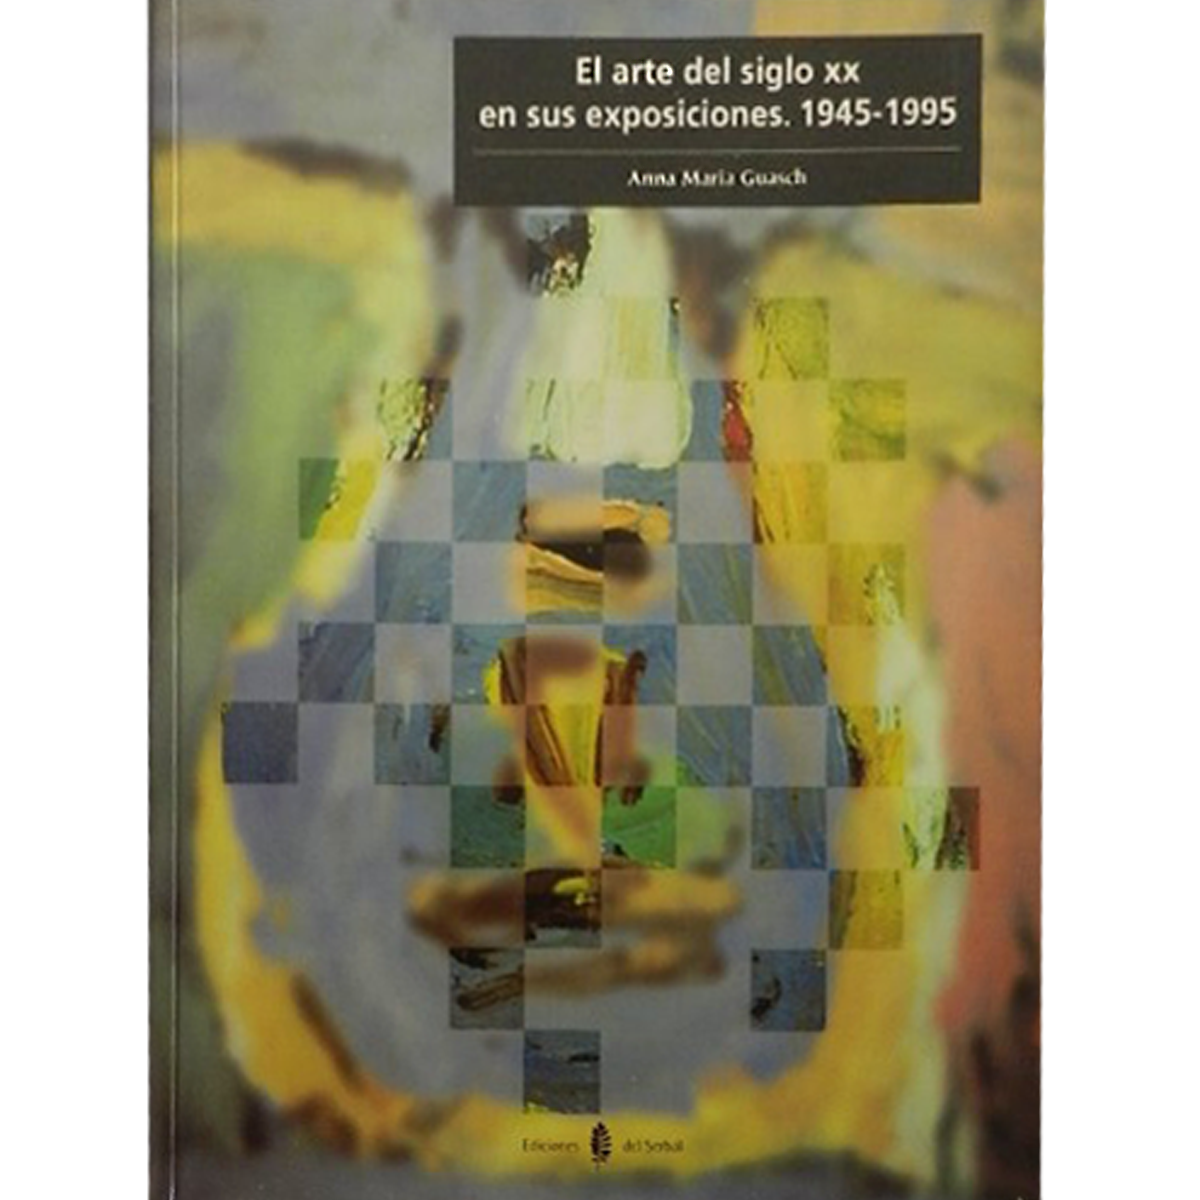 El arte del siglo xx en sus exposiciones: 1945-1995